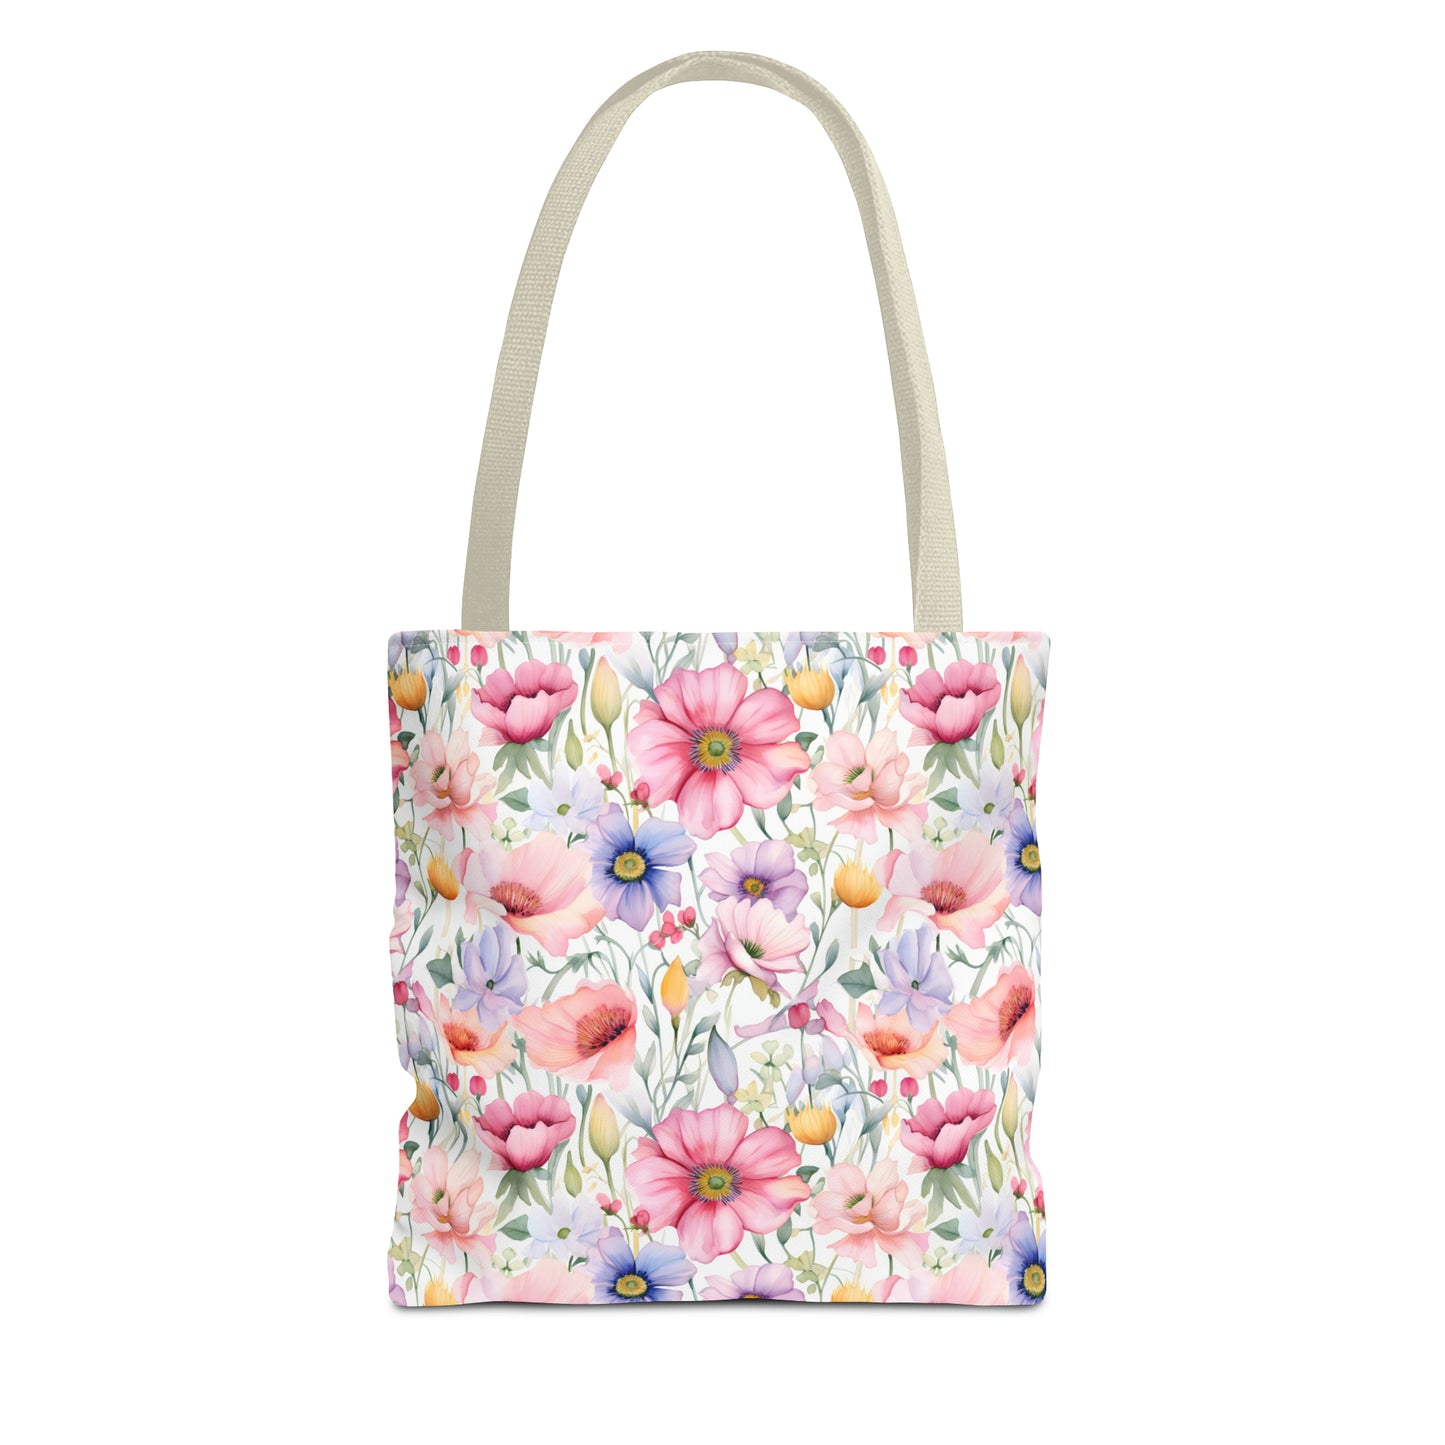 Pastel Blooms Wildflower Tote Bag (13" x 13")